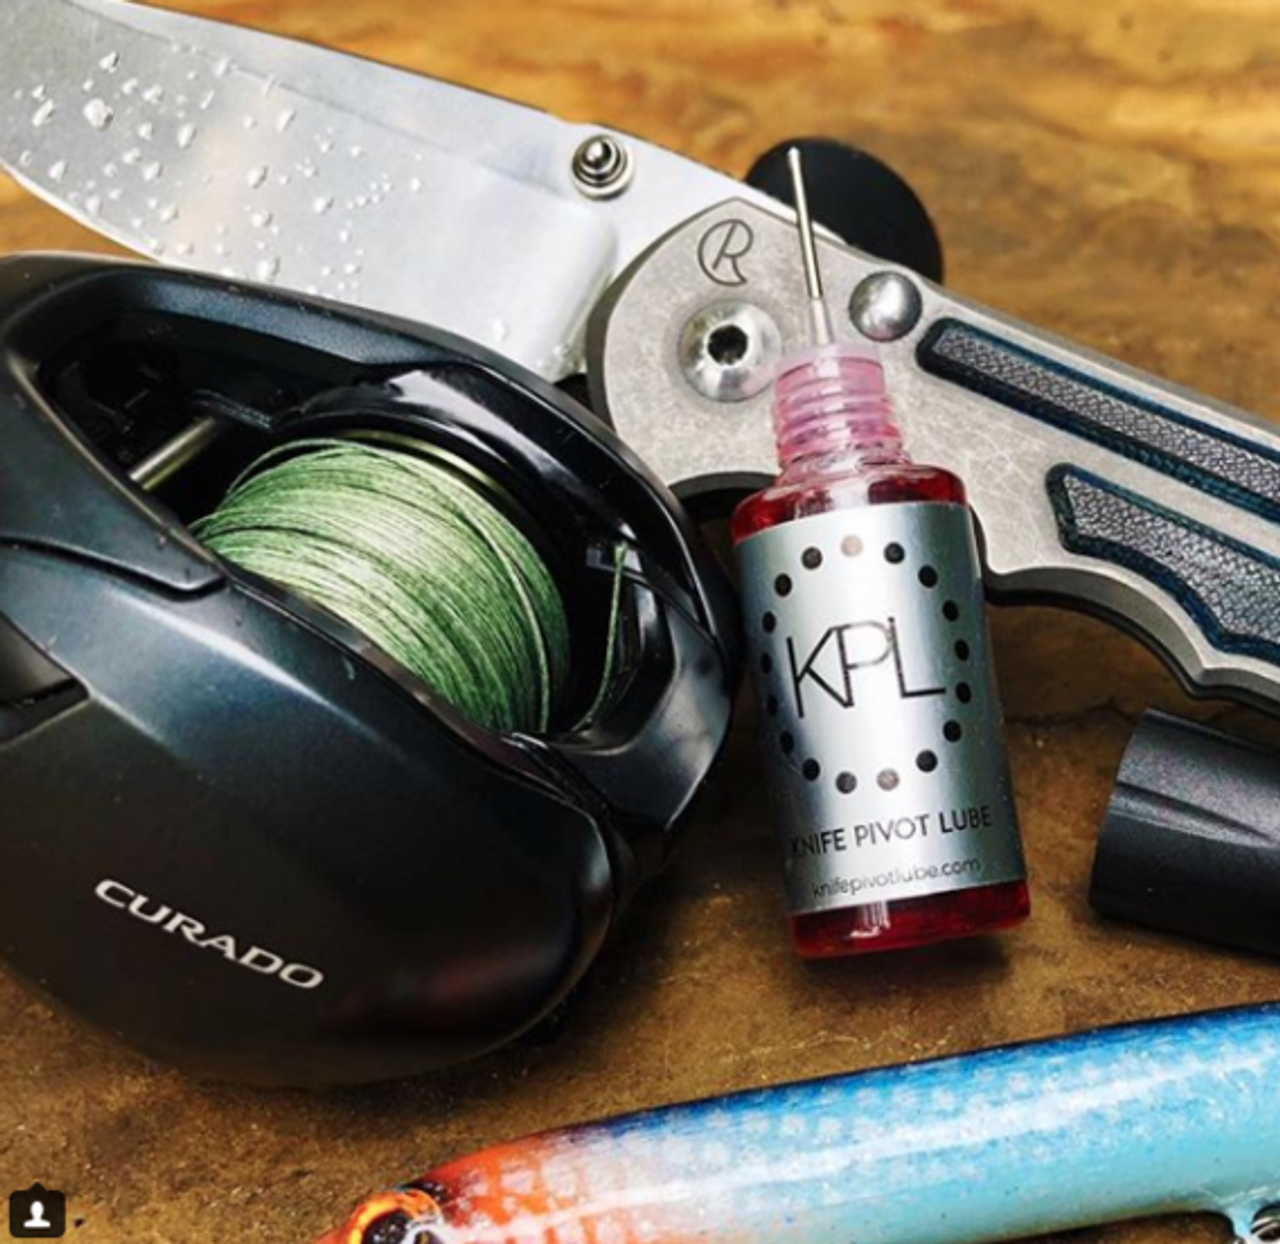 KPL Knife Pivot Lube - care oil for your knife standard 10ml